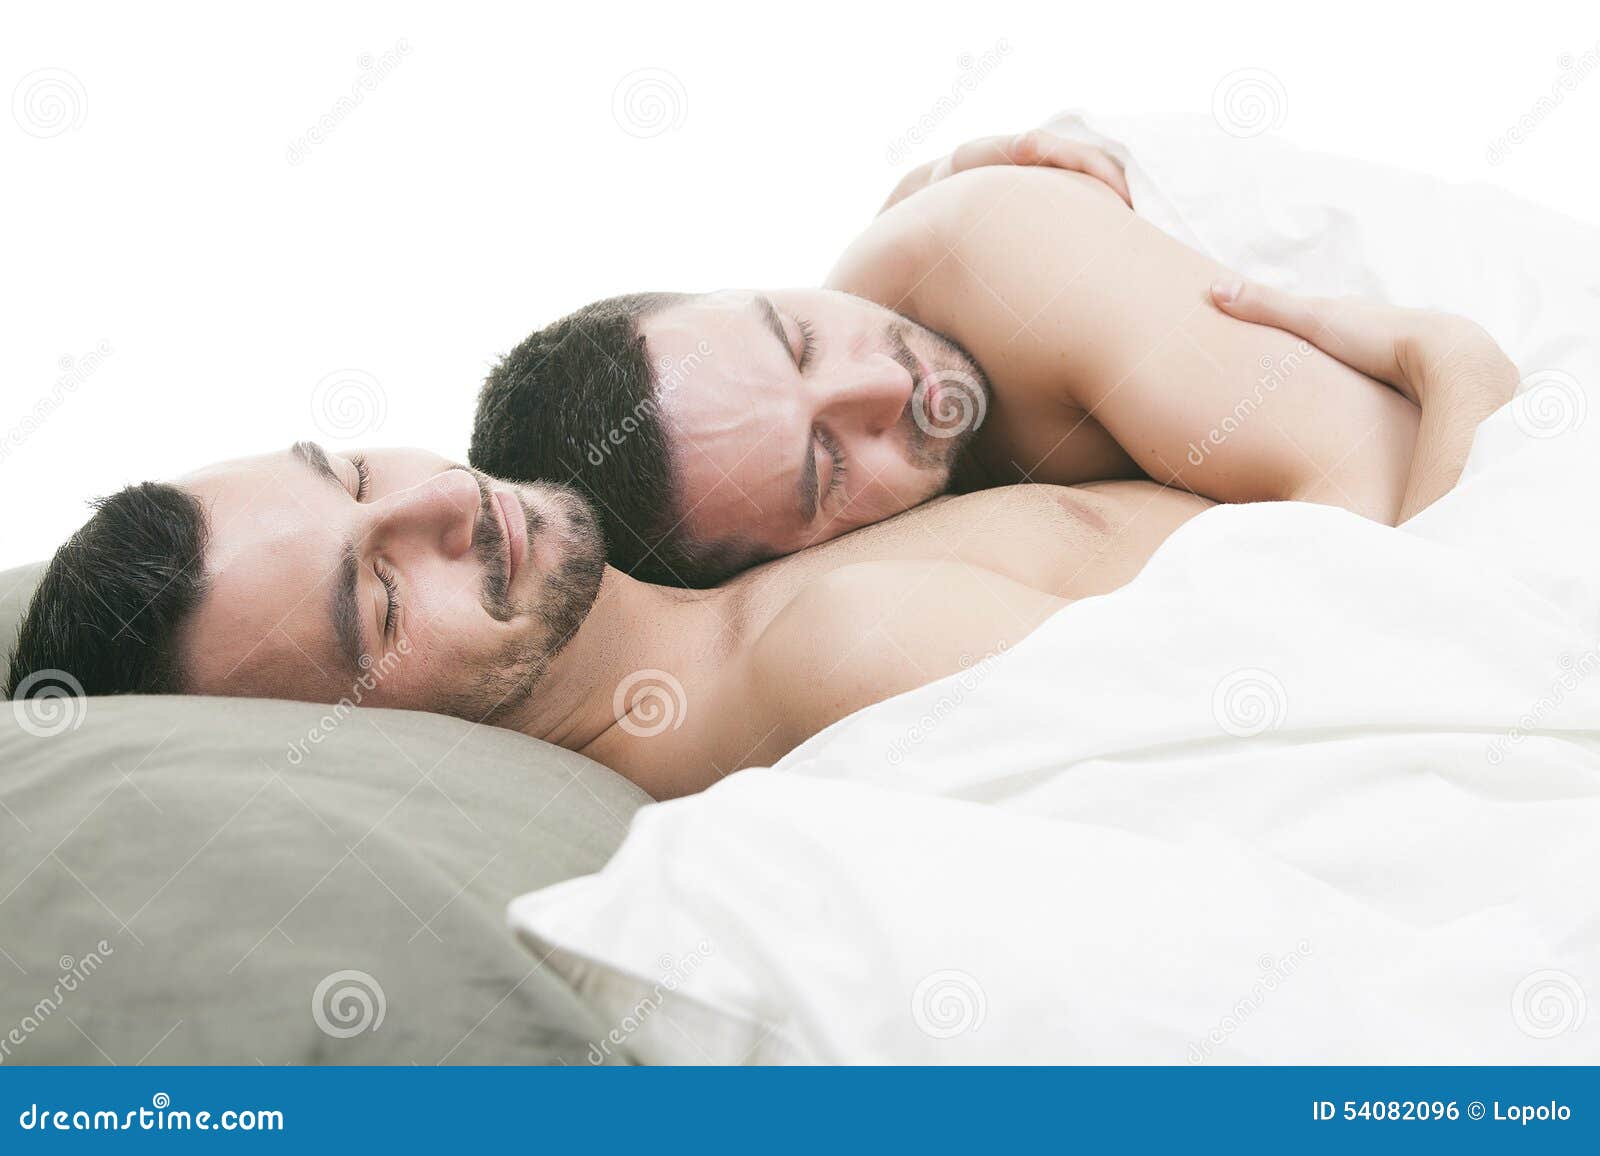 Мужчина хочет спать с мужчиной